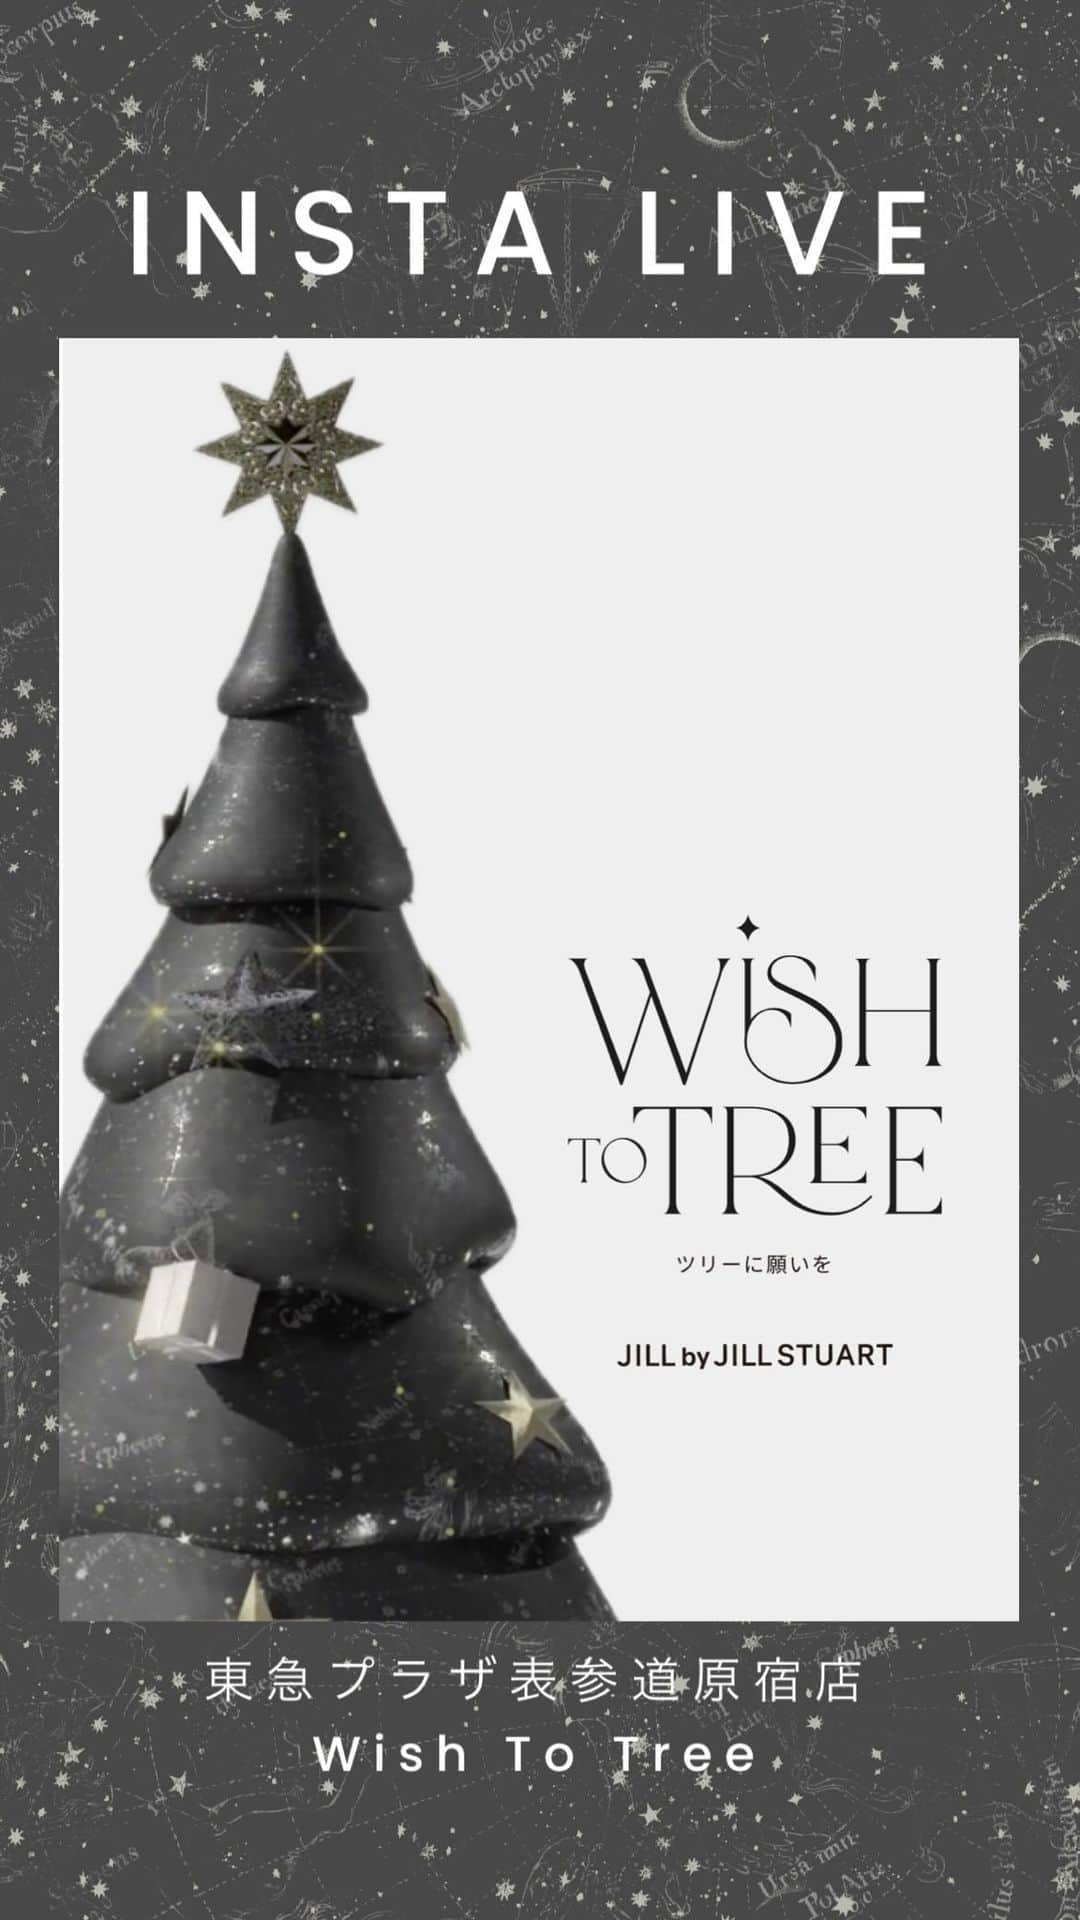 JILL by JILLSTUARTのインスタグラム：「【Wish to Tree】 15周年の特別なクリスマスを、あなたに。 ￣￣￣￣￣￣￣￣￣￣￣￣￣￣￣￣￣￣￣￣ 🔔詳細はプロフィールURLをチェック  【Wish to Tree】 この機会にしか叶わない、 特別な願い事を星空とツリーが叶えてくれる。 特別なクリスマスを、あなたに。  . . ▪️プレゼント内容▪️  《A賞(1名様)》 JILL by JILL STUARTお買い物ツアー プレスルームにご招待し、 10万円分お好きなお洋服選び放題！  《B賞(2名様)》 カスタムオーダー お洋服、バッグそれぞれ1組様 世界にひとつだけのお洋服、バッグが作れる カスタムオーダー体験  《C賞(4名様)》 世界にひとつしかない 幻の商品サンプルプレゼント！ ※プレゼントはお選び頂けませんのでご了承下さい。  《D賞(1名様)》 JILL STUART Beautyの コスメセットをプレゼント！  . ▪️東急プラザ表参道原宿店限定プレゼント▪️ インスタグラムオフィシャルアカウント @jillbyjillstuart_officialのフォロー画面提示で ▫️JILL by JILL  STUARTオリジナルチャーム ▫️JILL STUART Beautyコスメサンプル をプレゼント！ ※12/1〜先着順、無くなり次第終了となります。  . . ▪️応募方法▪️ 《WEBで応募》 応募締め切り : 12/25(月)23:59 応募フォームに必要事項を入力し、オンラインサイトで税込5,000円以上お買い物をすると応募完了！  《東急プラザ表参道原宿店フォトスポットで応募》 応募締め切り : 12/1(金)〜12/25(月) 願いが叶うツリーフォトスポットが、表参道に出現！ 税込5,000円以上お買い上げのお客様に、 応募券をお渡し致します。 レシートを貼り付け、フォトスポットのポストに投函すれば応募完了！  . . ▪️ご注意▪️ ※当選の発表は、プレゼントに関しましては商品の発送をもってかえさせていただきます。 今一度ご登録ご住所が正しいかどうかのご確認をお願いいたします。 ※お買い物ご招待、カスタムオーダーに関しては12/29までにご入力いただきましたご登録メールアドレス宛にご連絡させていただきます。 ※抽選は12/26頃に行います。抽選までにメルマガ登録解除、メンバーズ退会した場合など、本キャンペーンの条件を満たさなくなった場合は、抽選対象外となります。 ※メール受信拒否設定をされているとメールが届きませんので、「saneibd.com」「sanei.net」のドメインからのメールが受信できるよう事前に設定をお願いいたします。 ※当選に関するお問い合わせにはお答えいたしかねますので、あらかじめご了承ください。 ※キャンペーンの内容は予告なく変更になる場合がございます。  JILL by JILL STUART  ￣￣￣￣￣￣￣￣￣￣￣￣￣￣￣￣￣￣￣￣￣ #ジルバイジルスチュアート  #jillbyjillstuart #jillby  #JILL_23AW #2023aw」